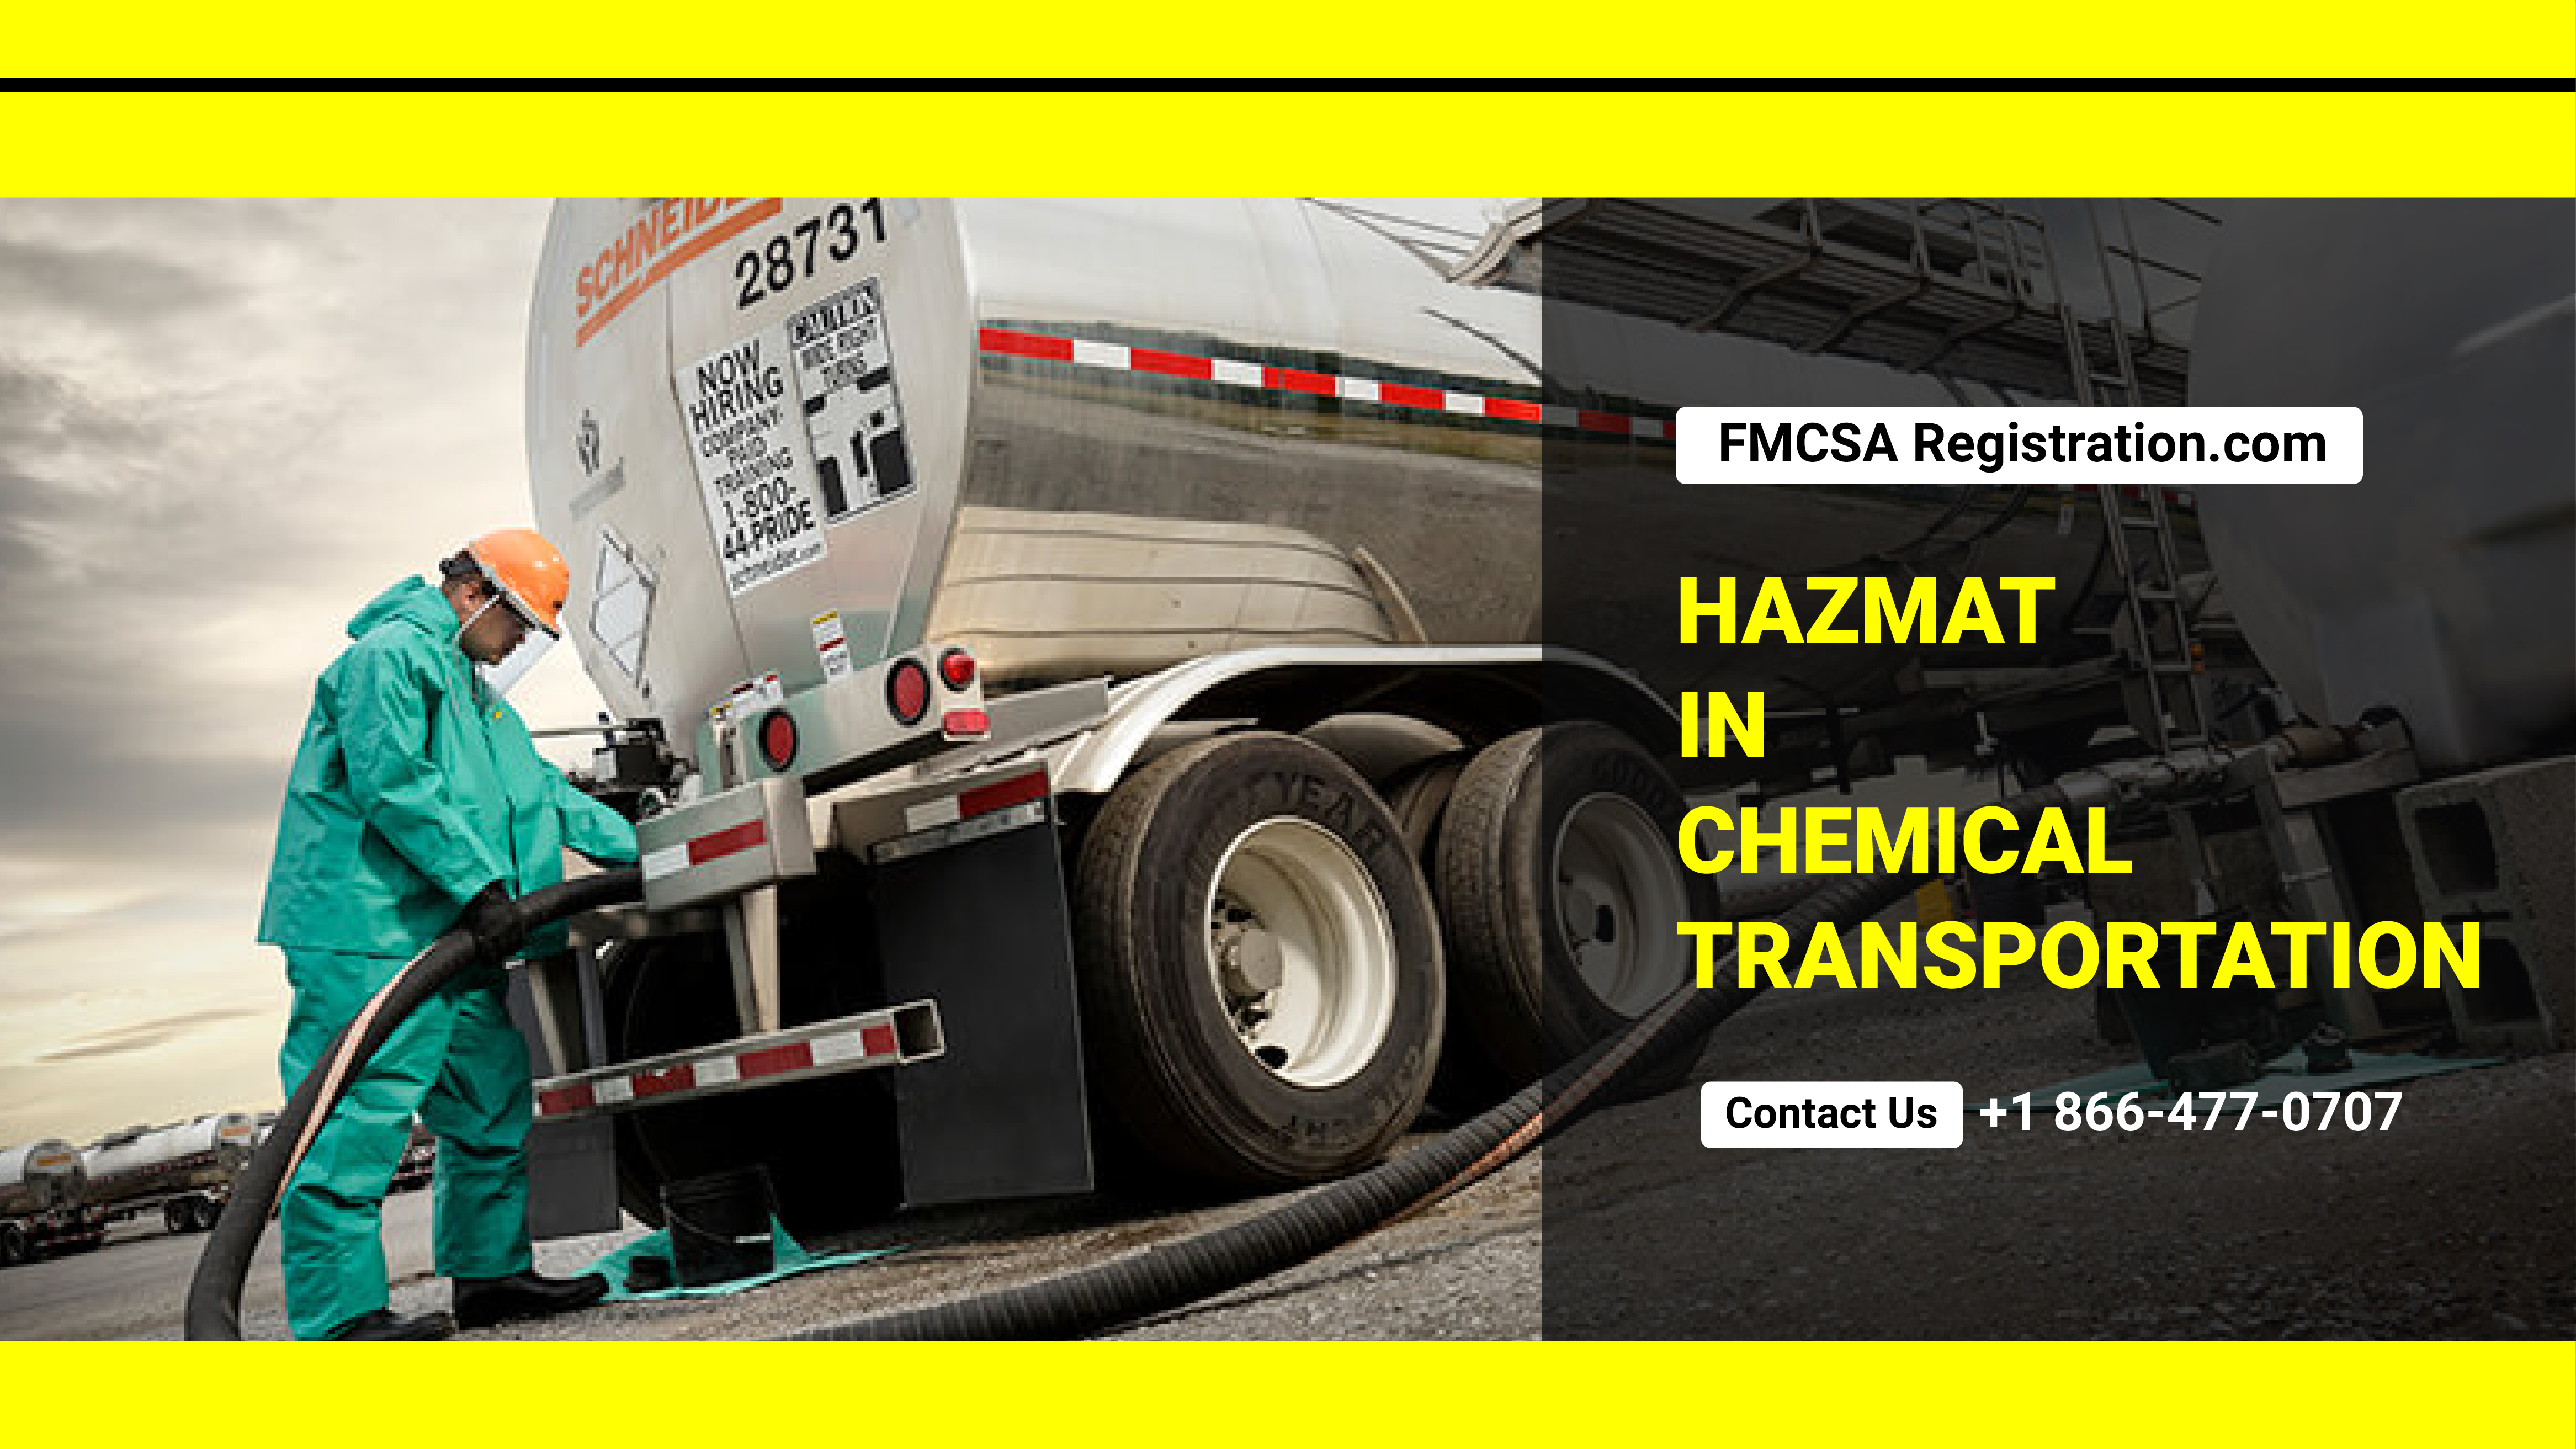 DOT Hazmat Training product image reference 1